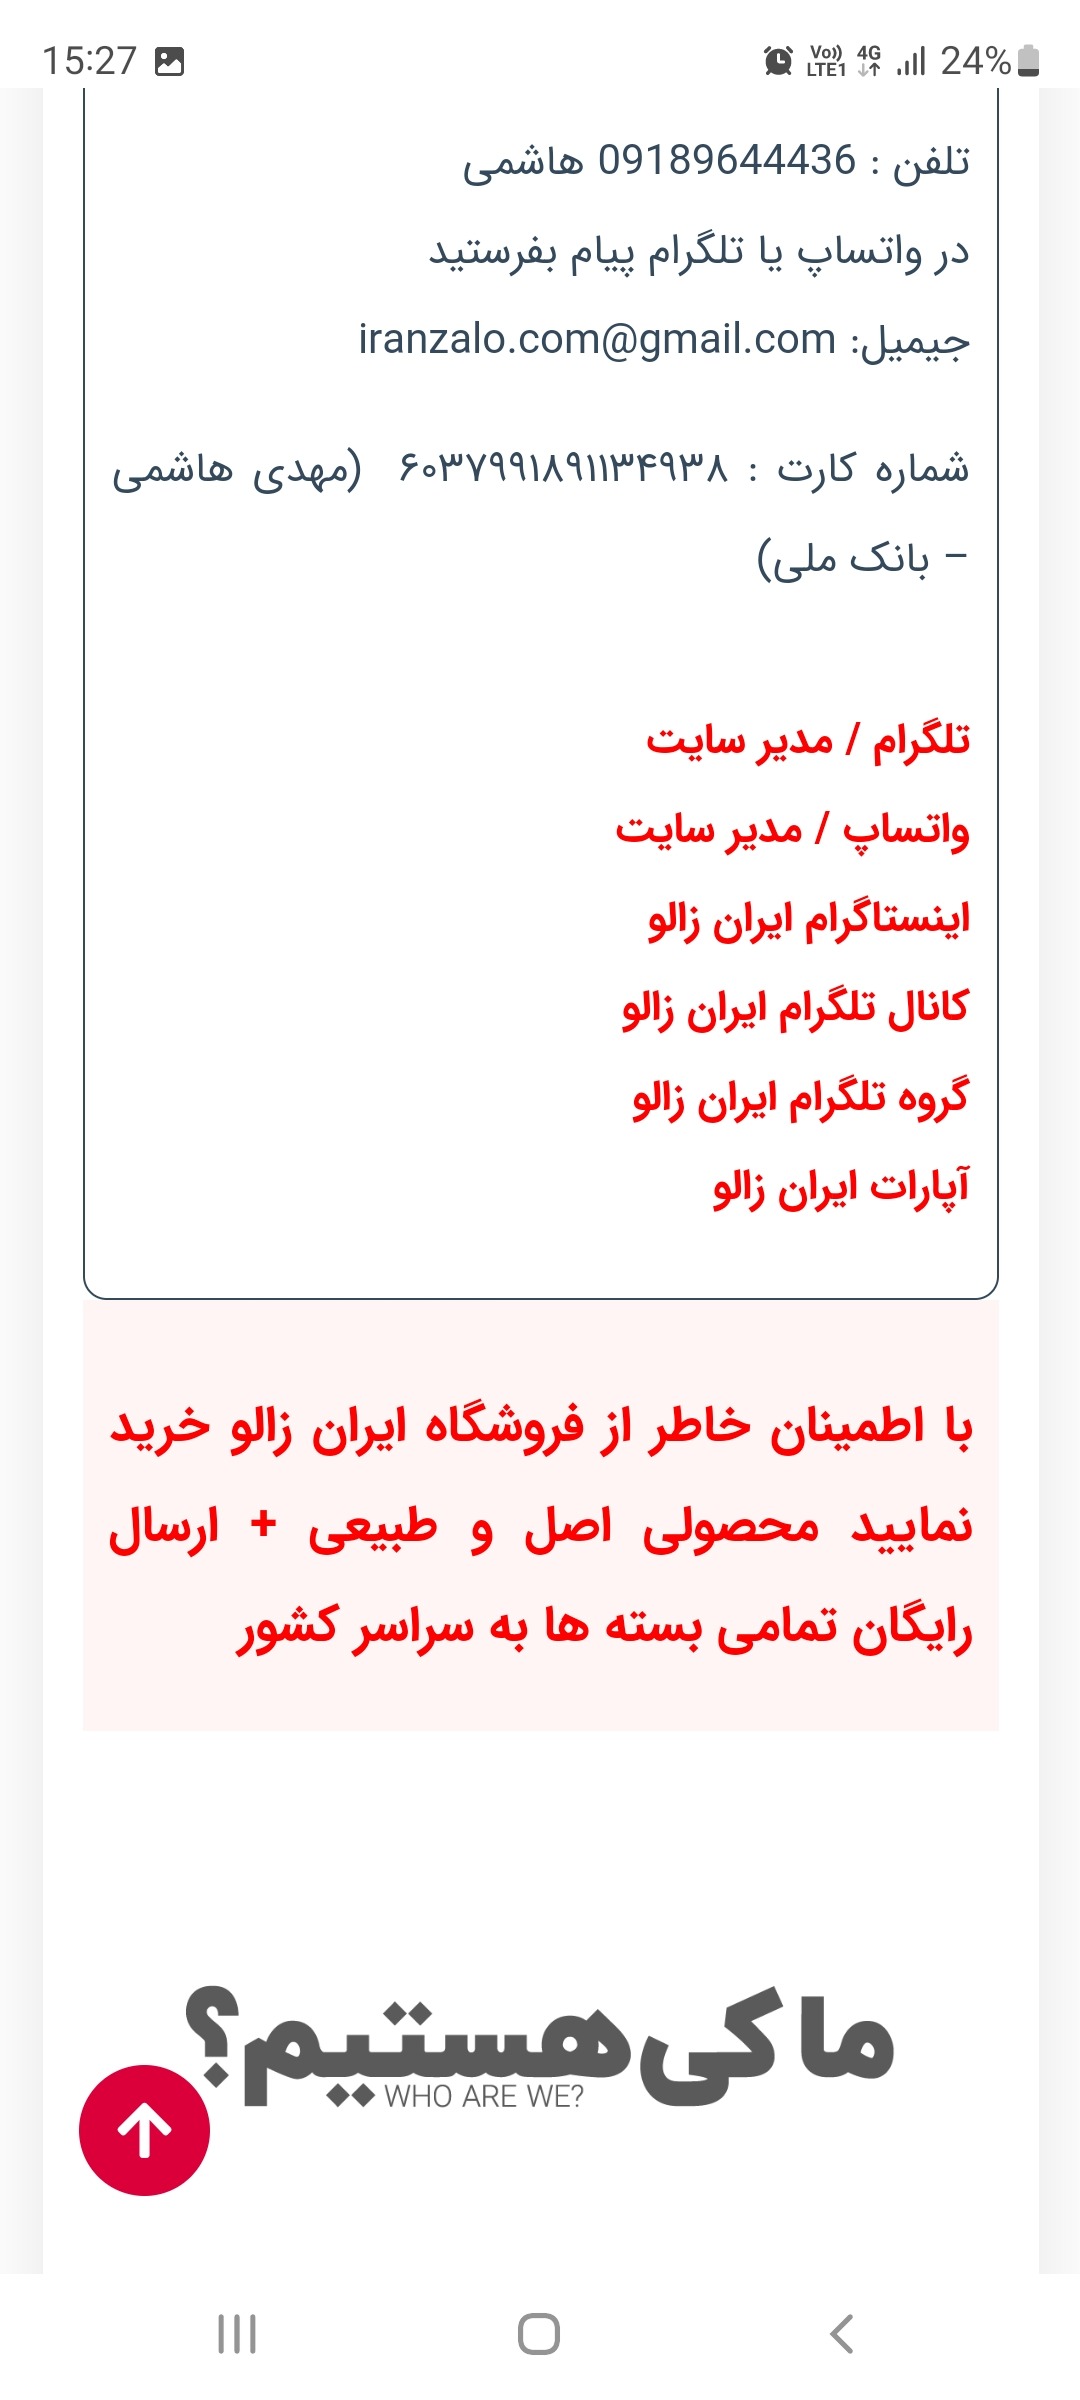 سایت ایران زالو